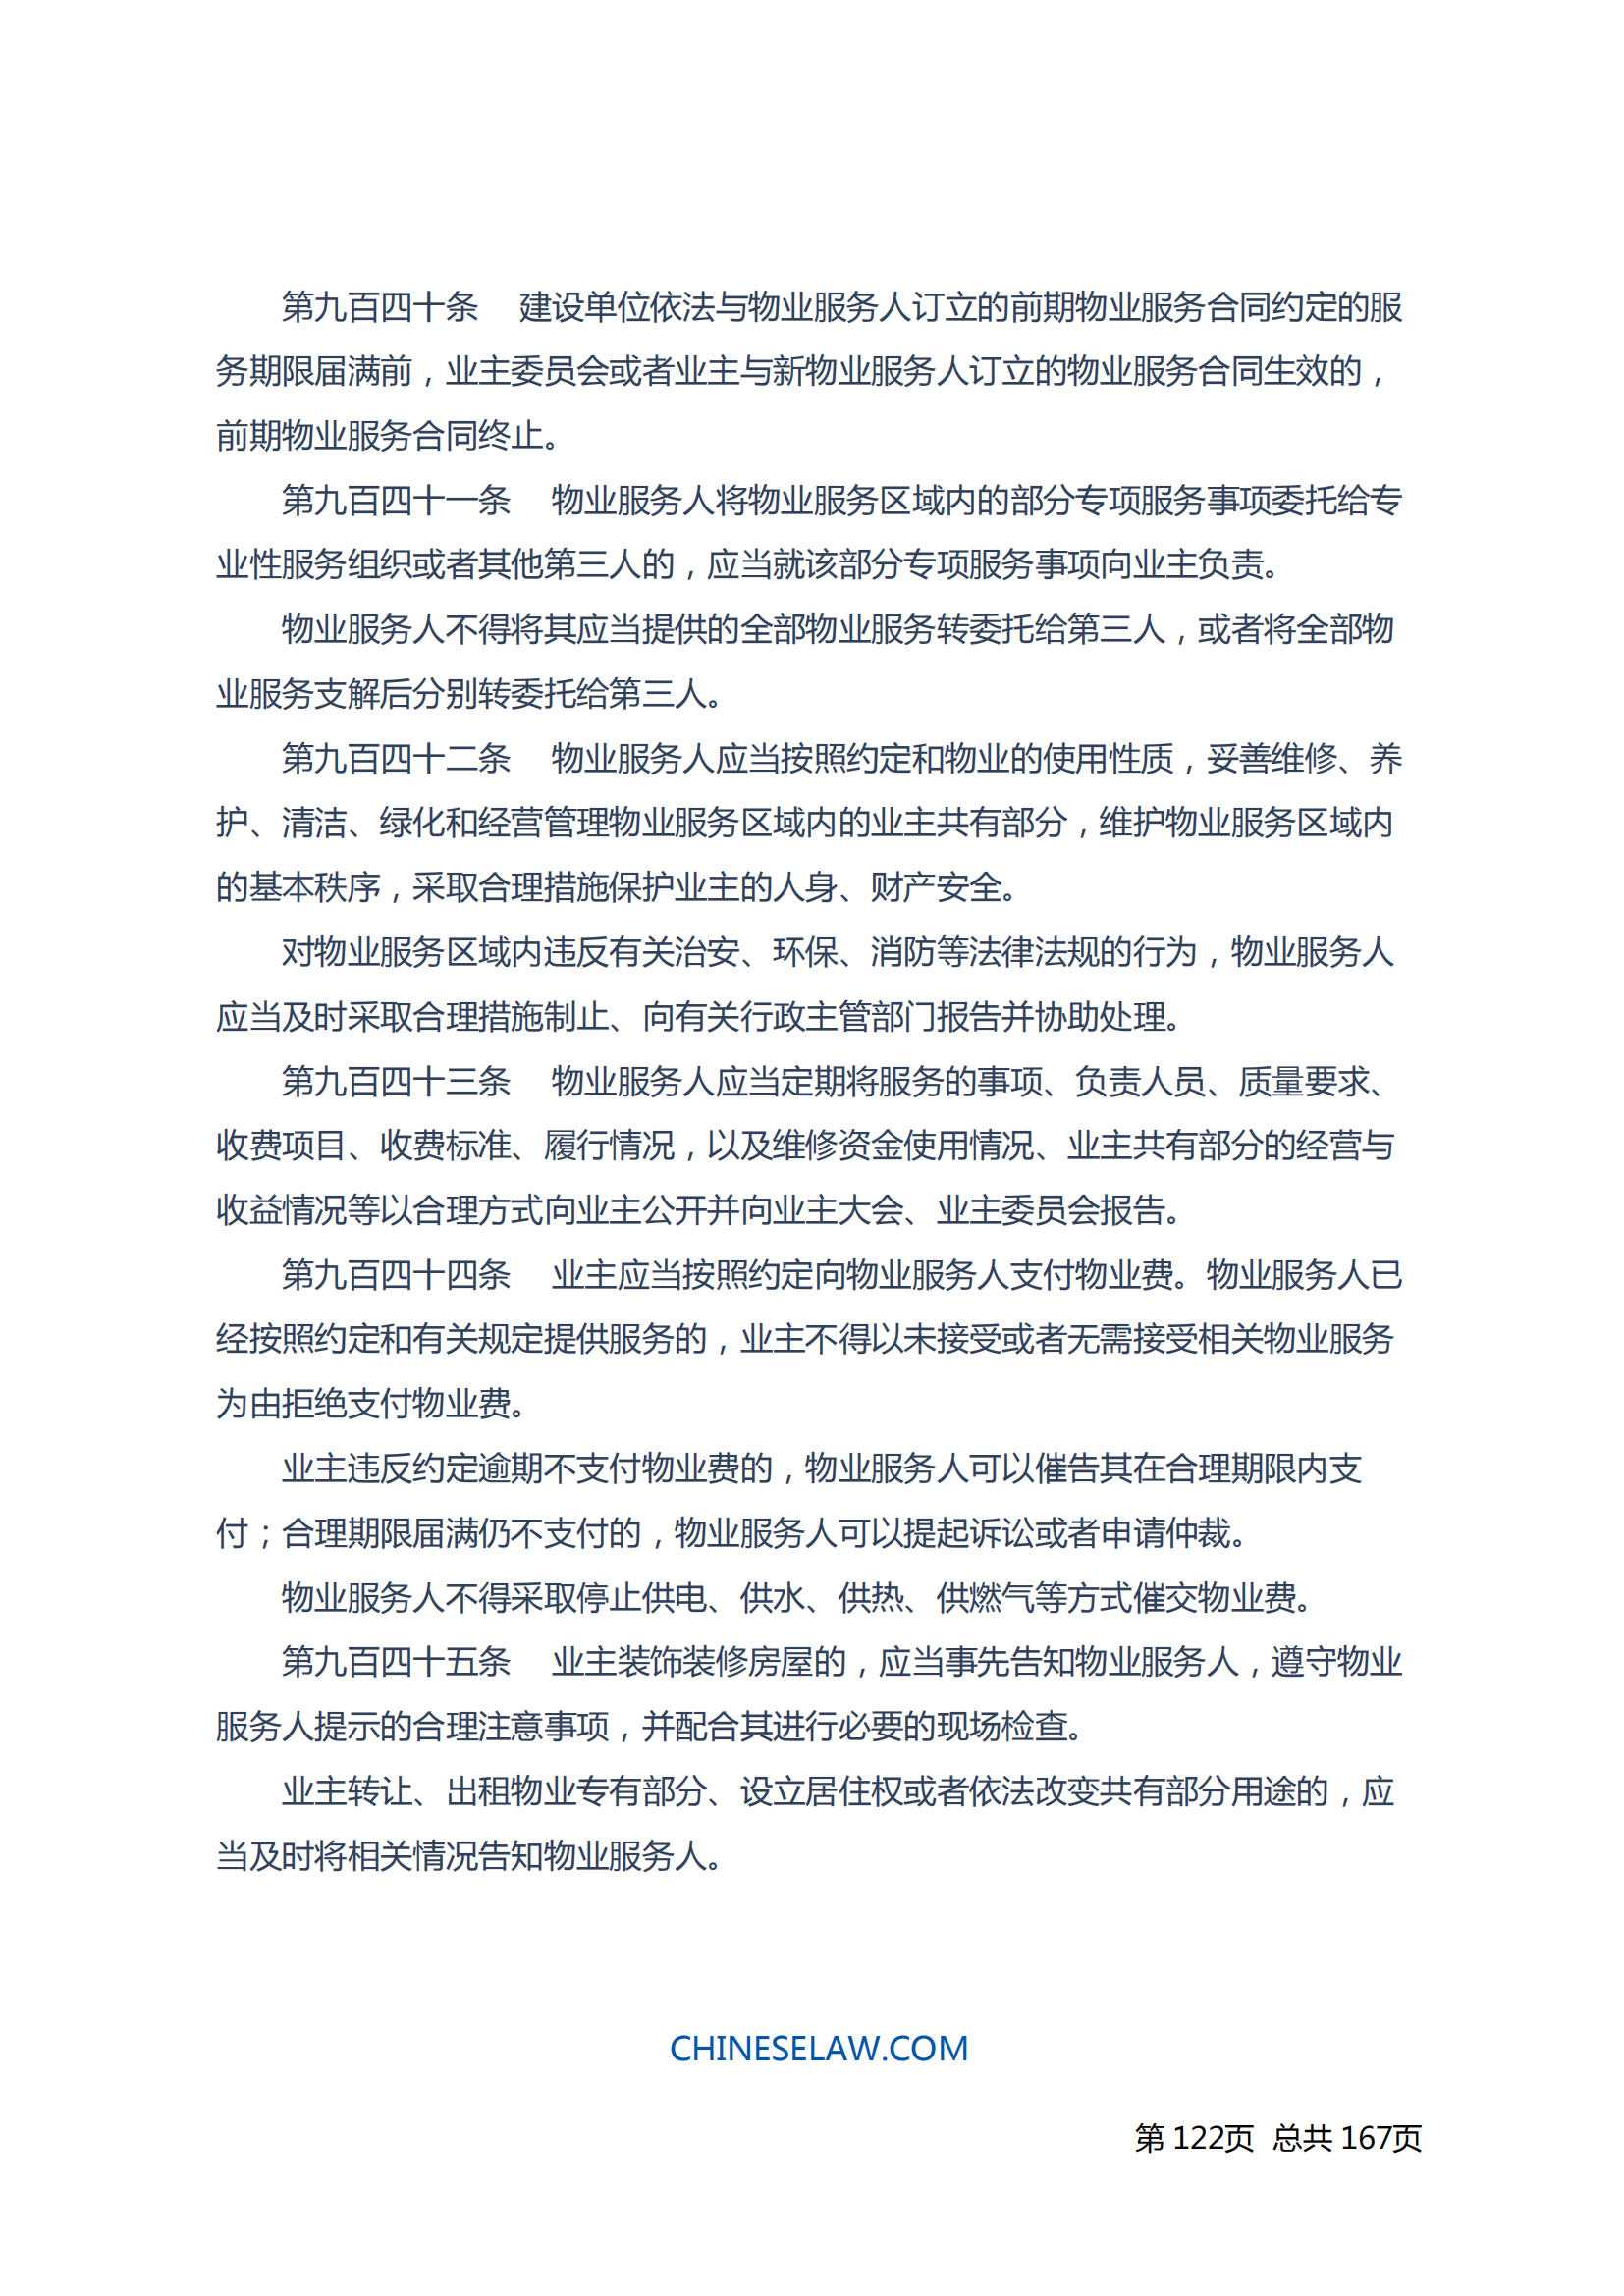 中华人民共和国民法典_121